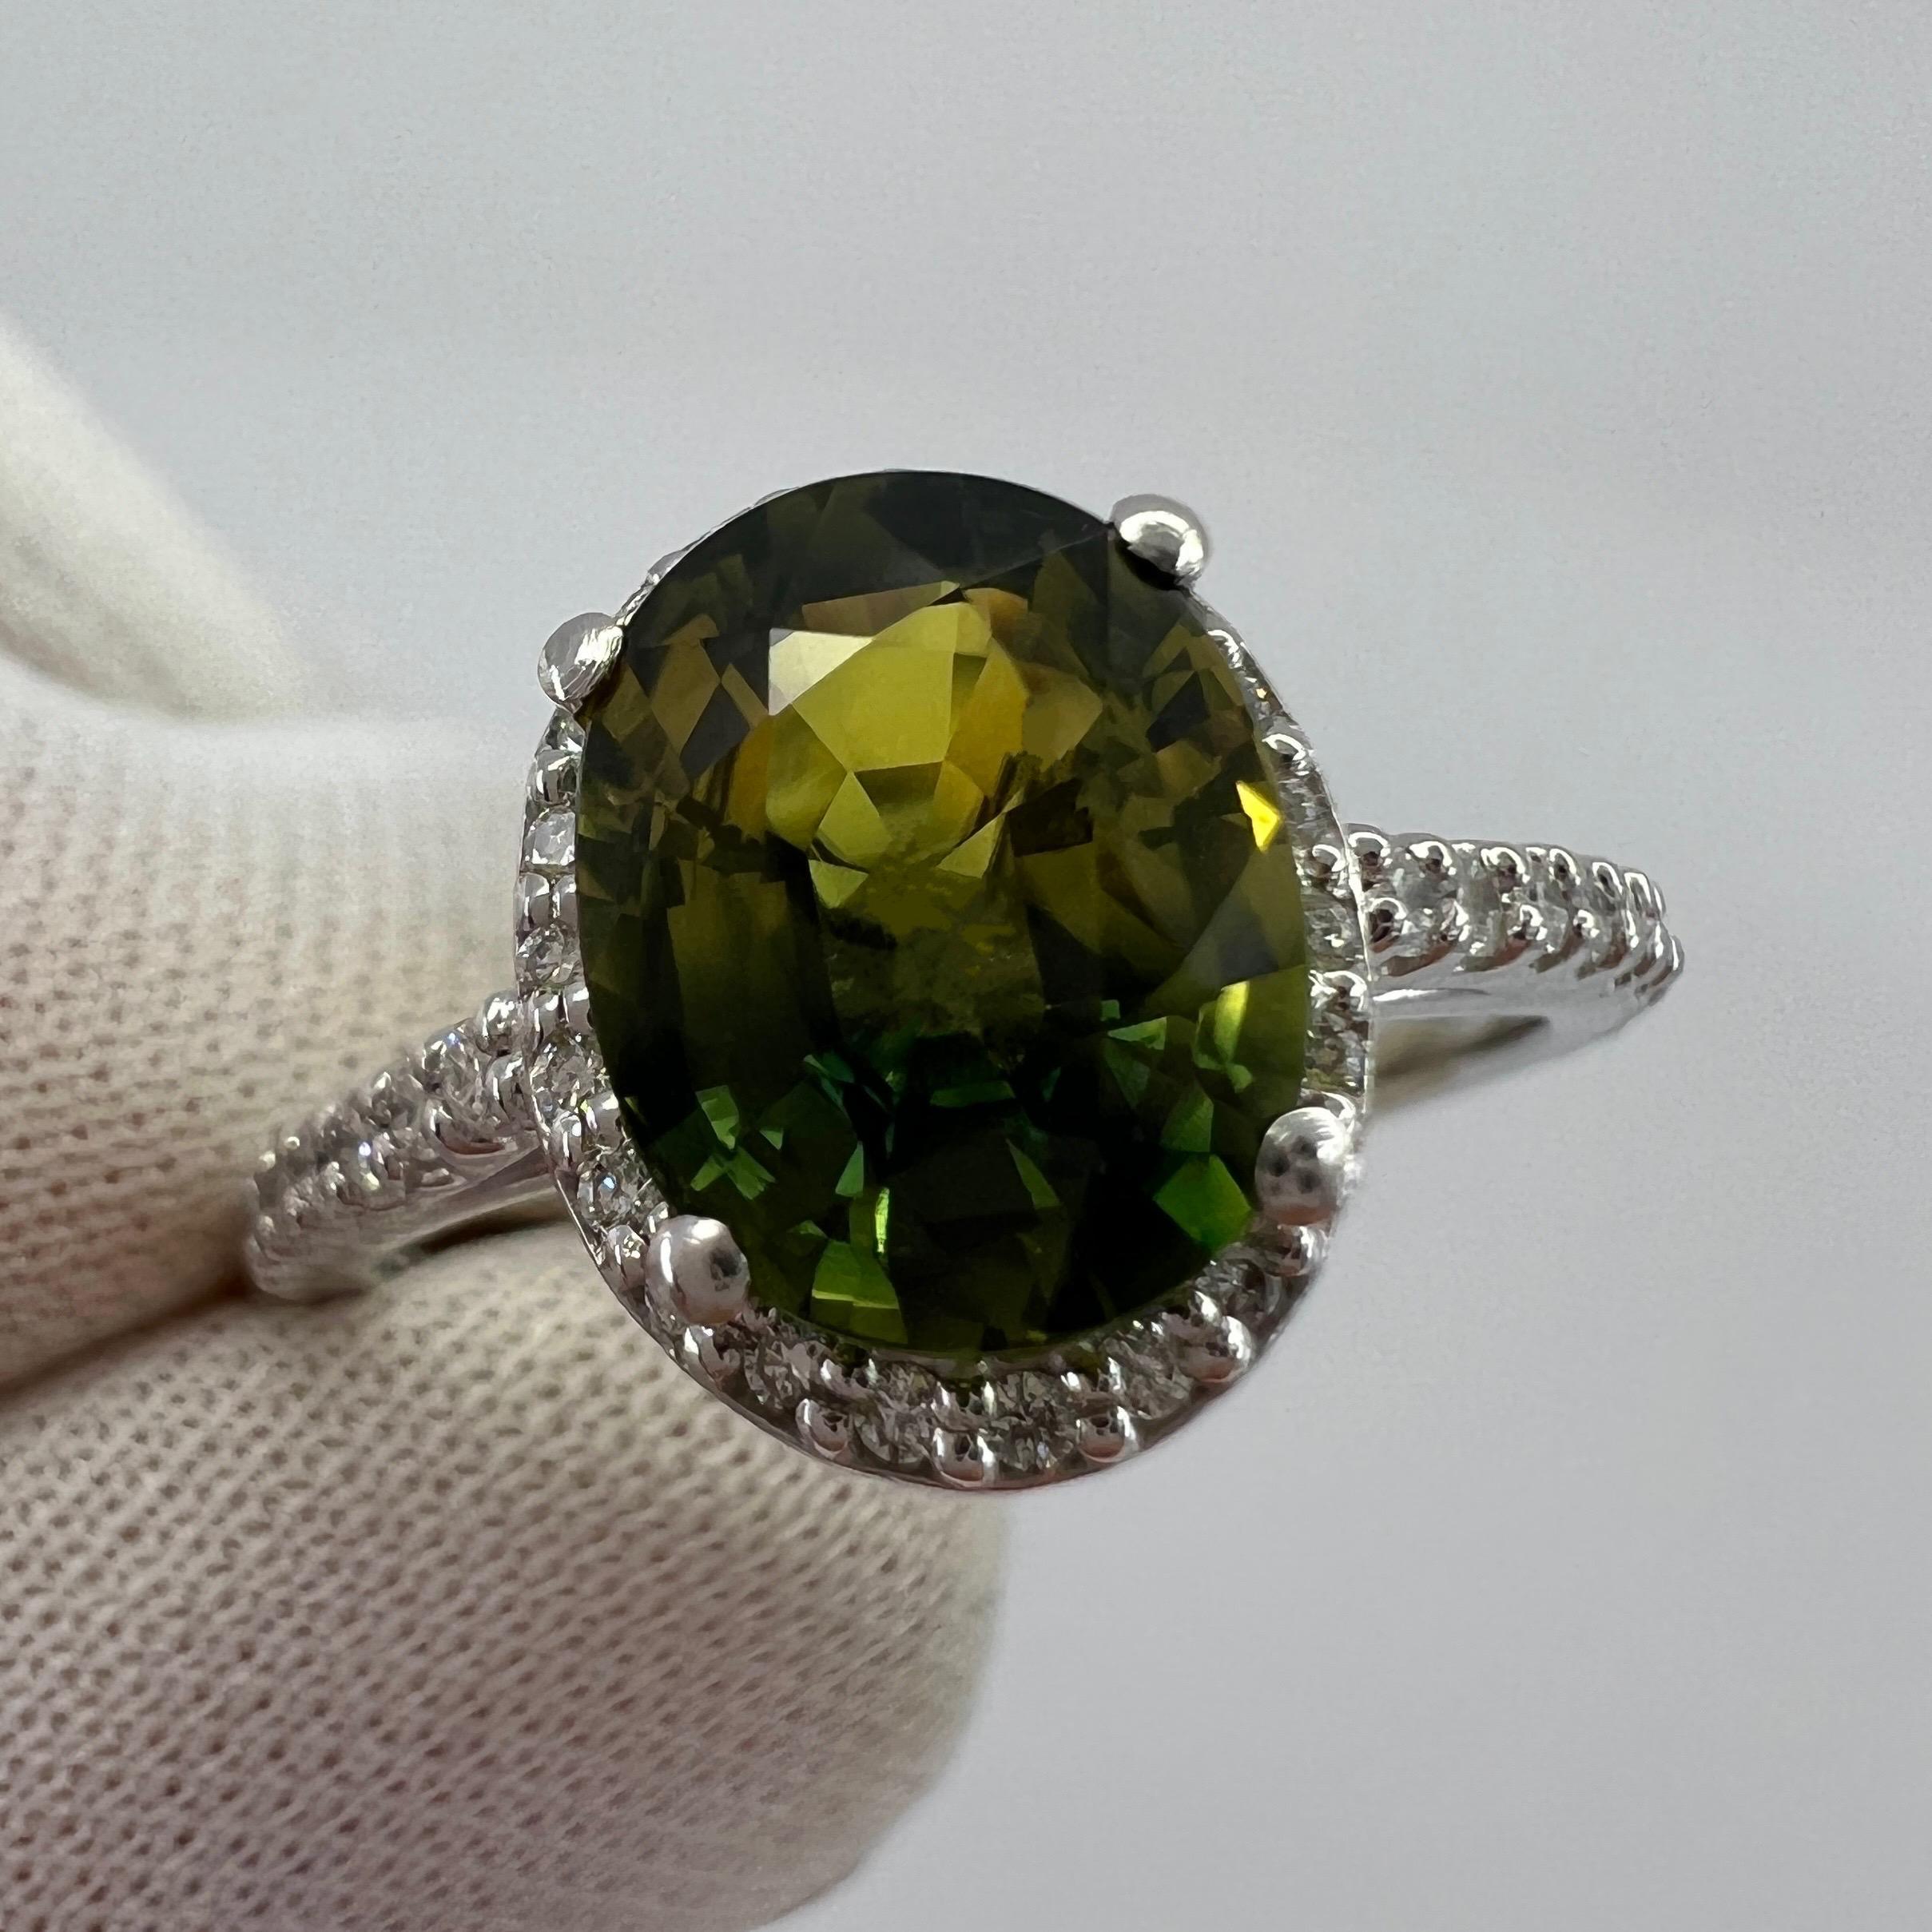 Bi Farbe Grün Gelb Australischer Saphir & Diamant Platin Halo Ring.

Einzigartiger australischer Saphir von 2,31 Karat mit einem atemberaubenden gelbgrünen Zweifarbeffekt. Seltener und einzigartiger Stein. 

Auch hat eine ausgezeichnete Klarheit,